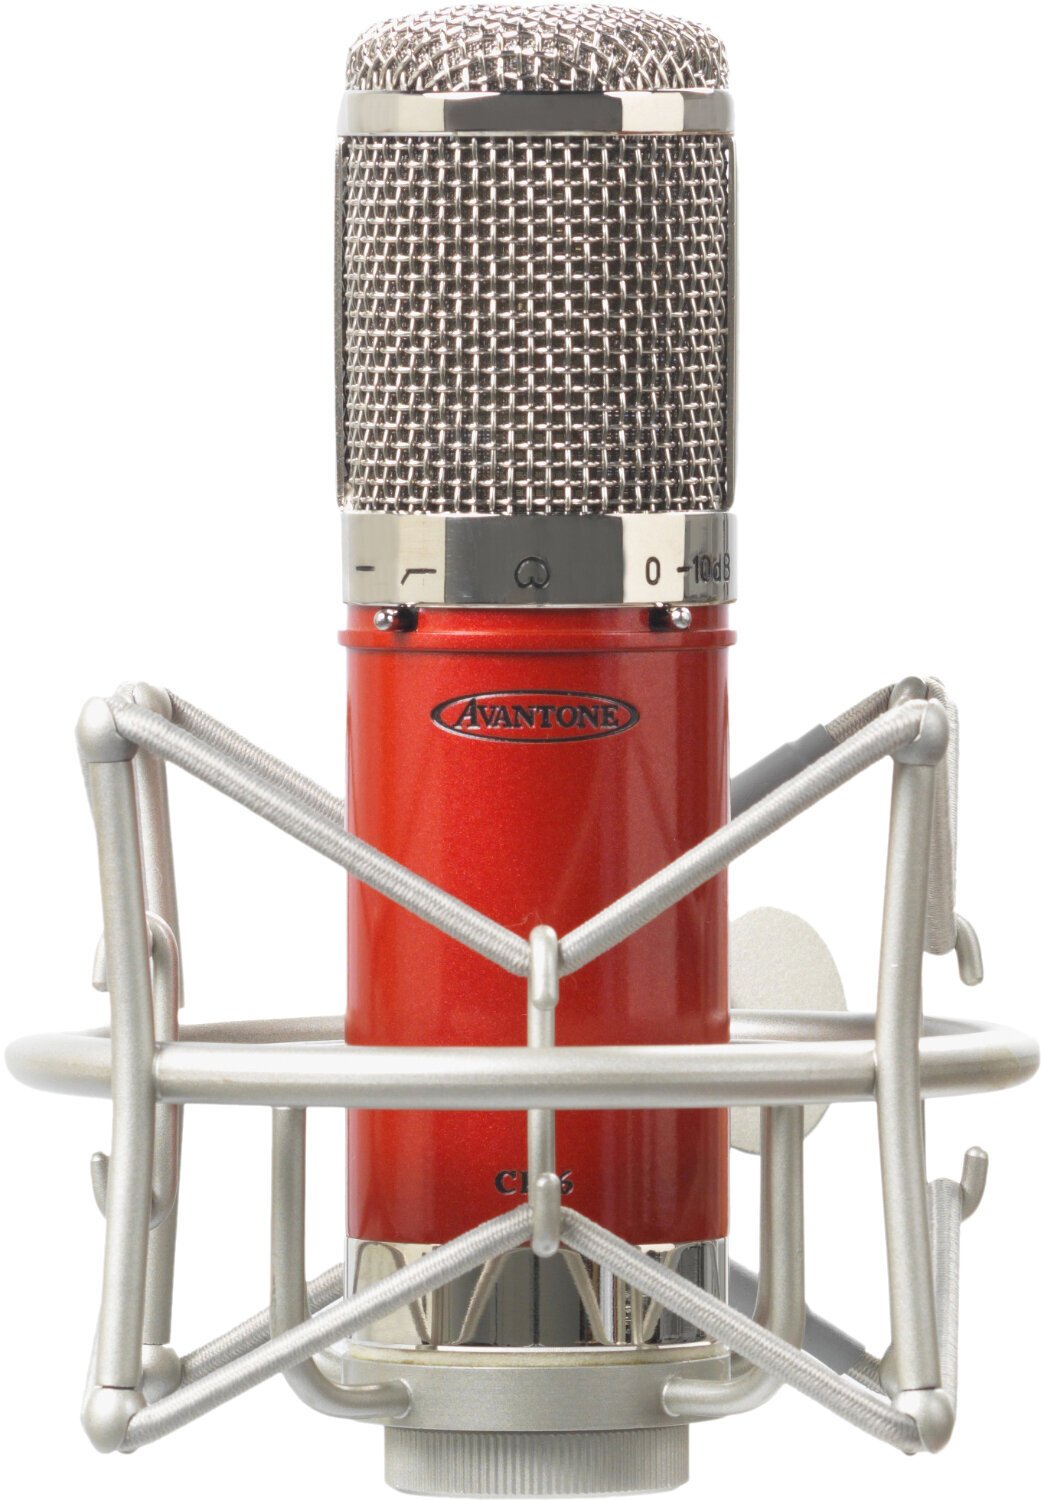 Kondensator Studiomikrofon Avantone Pro CK-6 Classic Kondensator Studiomikrofon